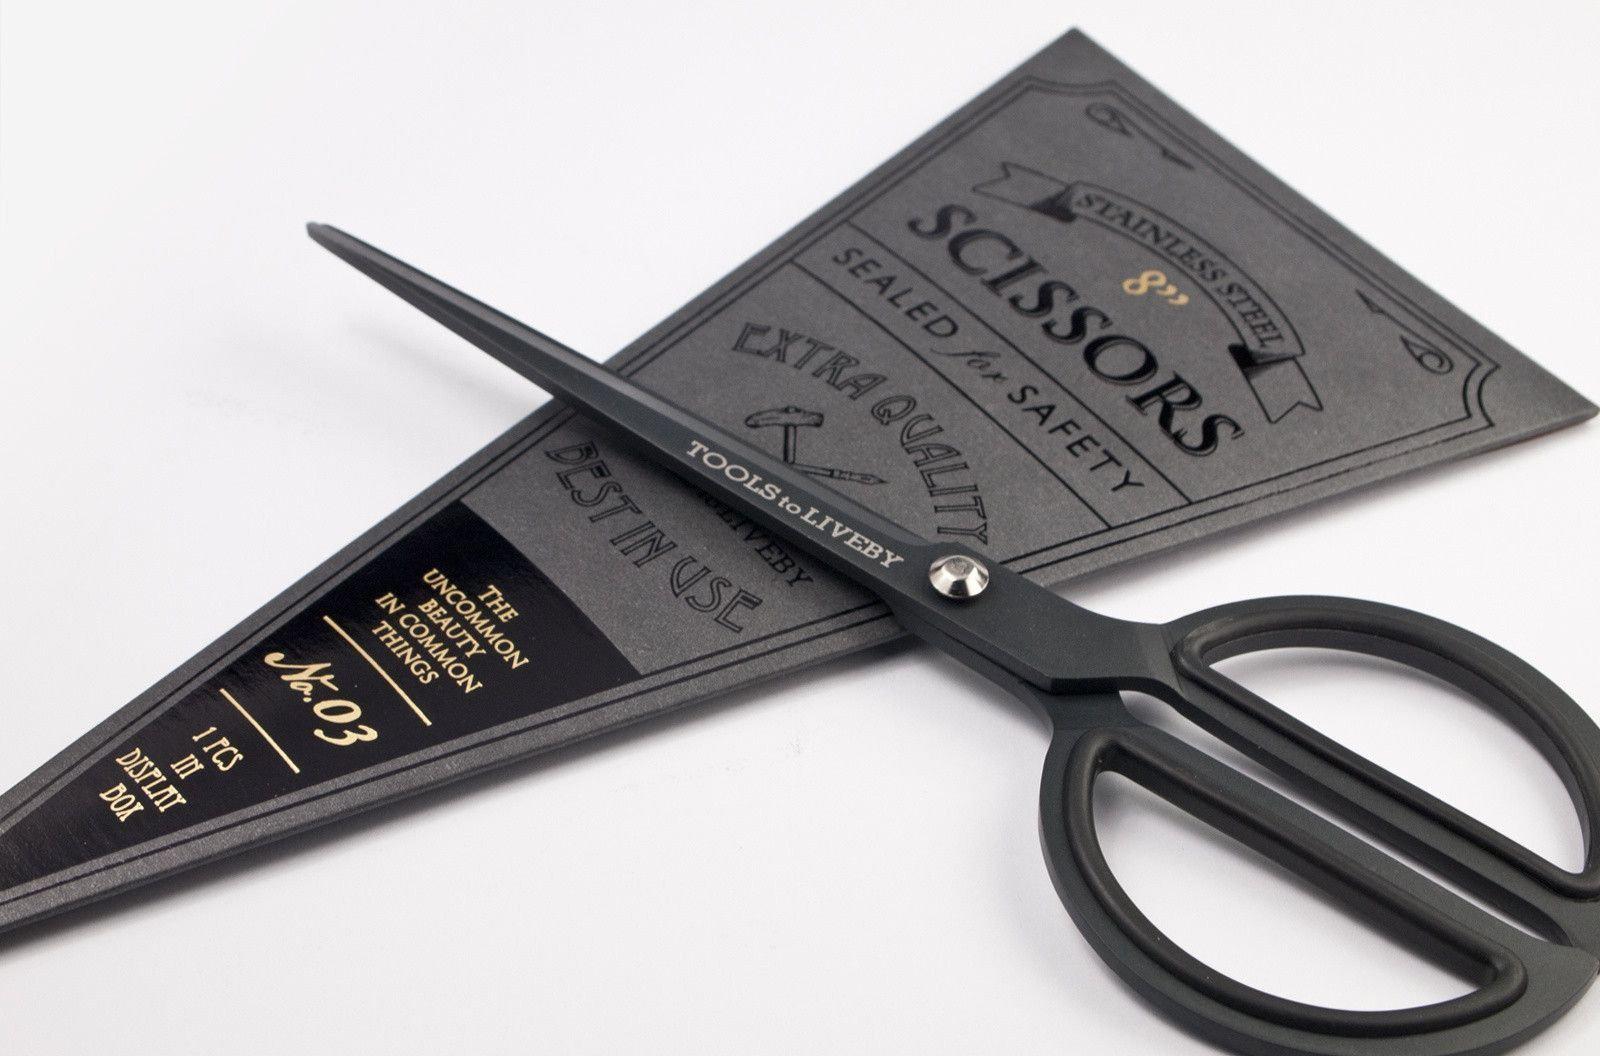 Vintage Metal Steel Made In Taiwan Scissors Black Handle 8